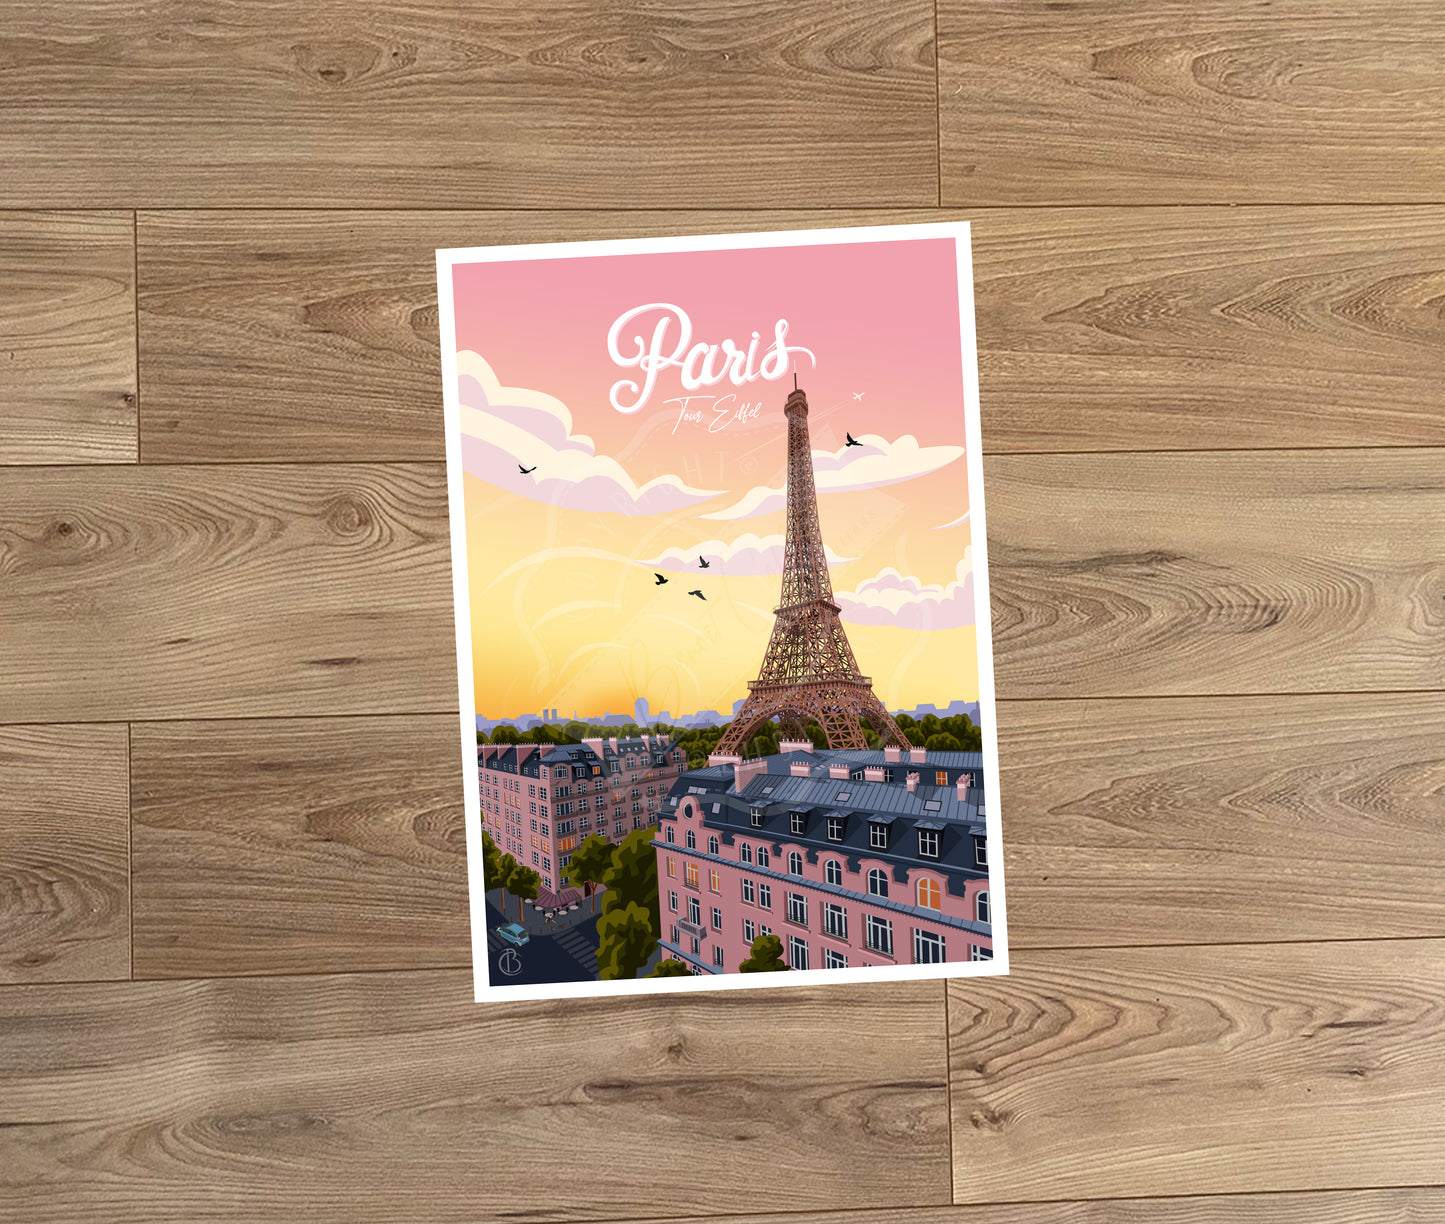 Paris - Tour Eiffel (Carte postale)